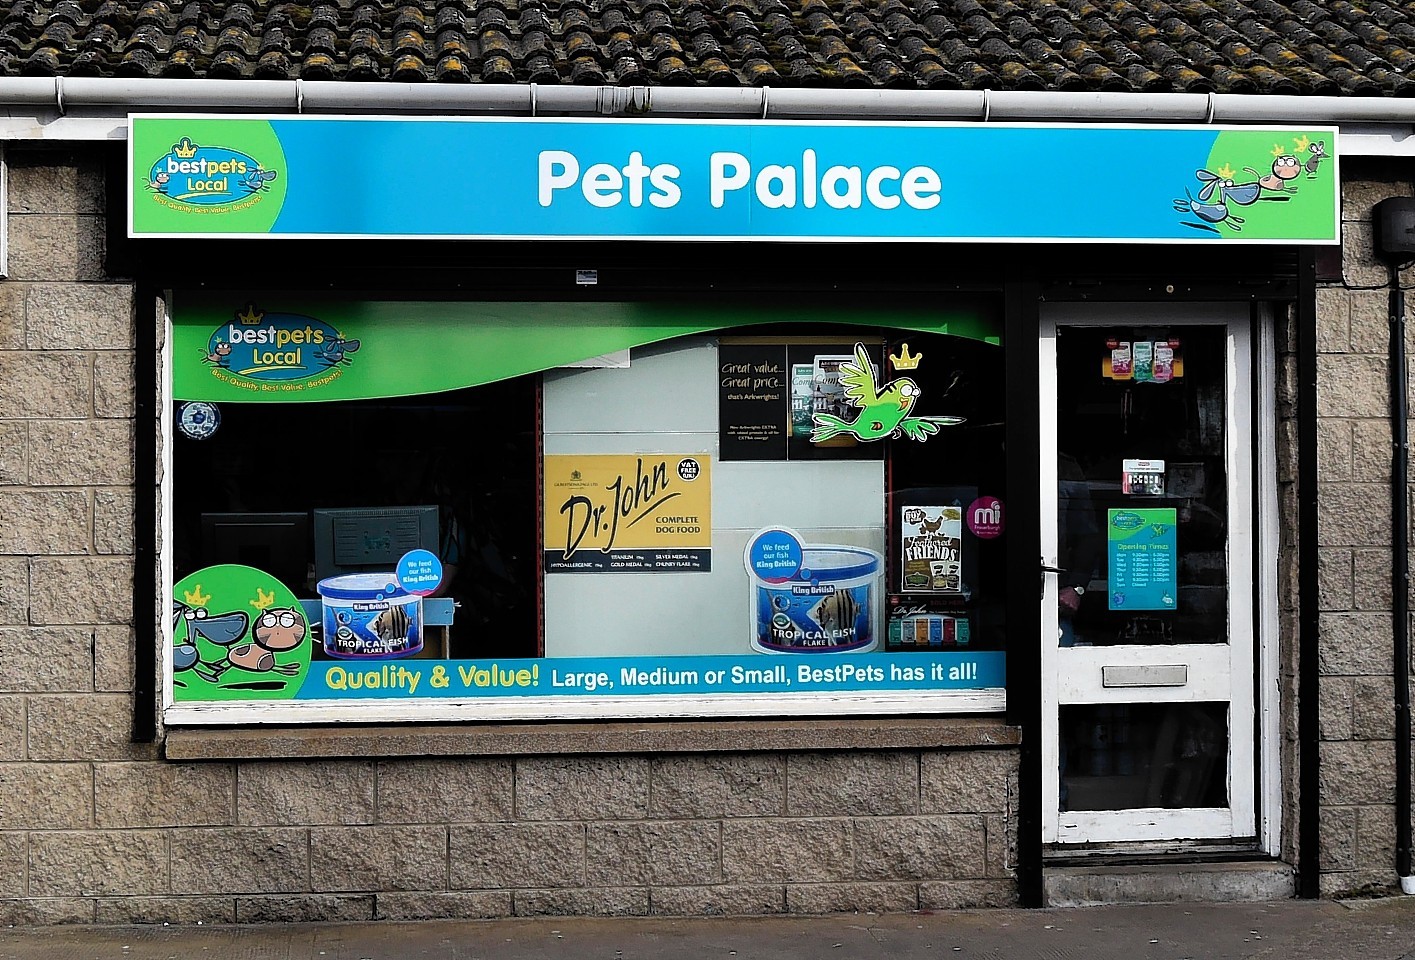 The Pets Palace shop